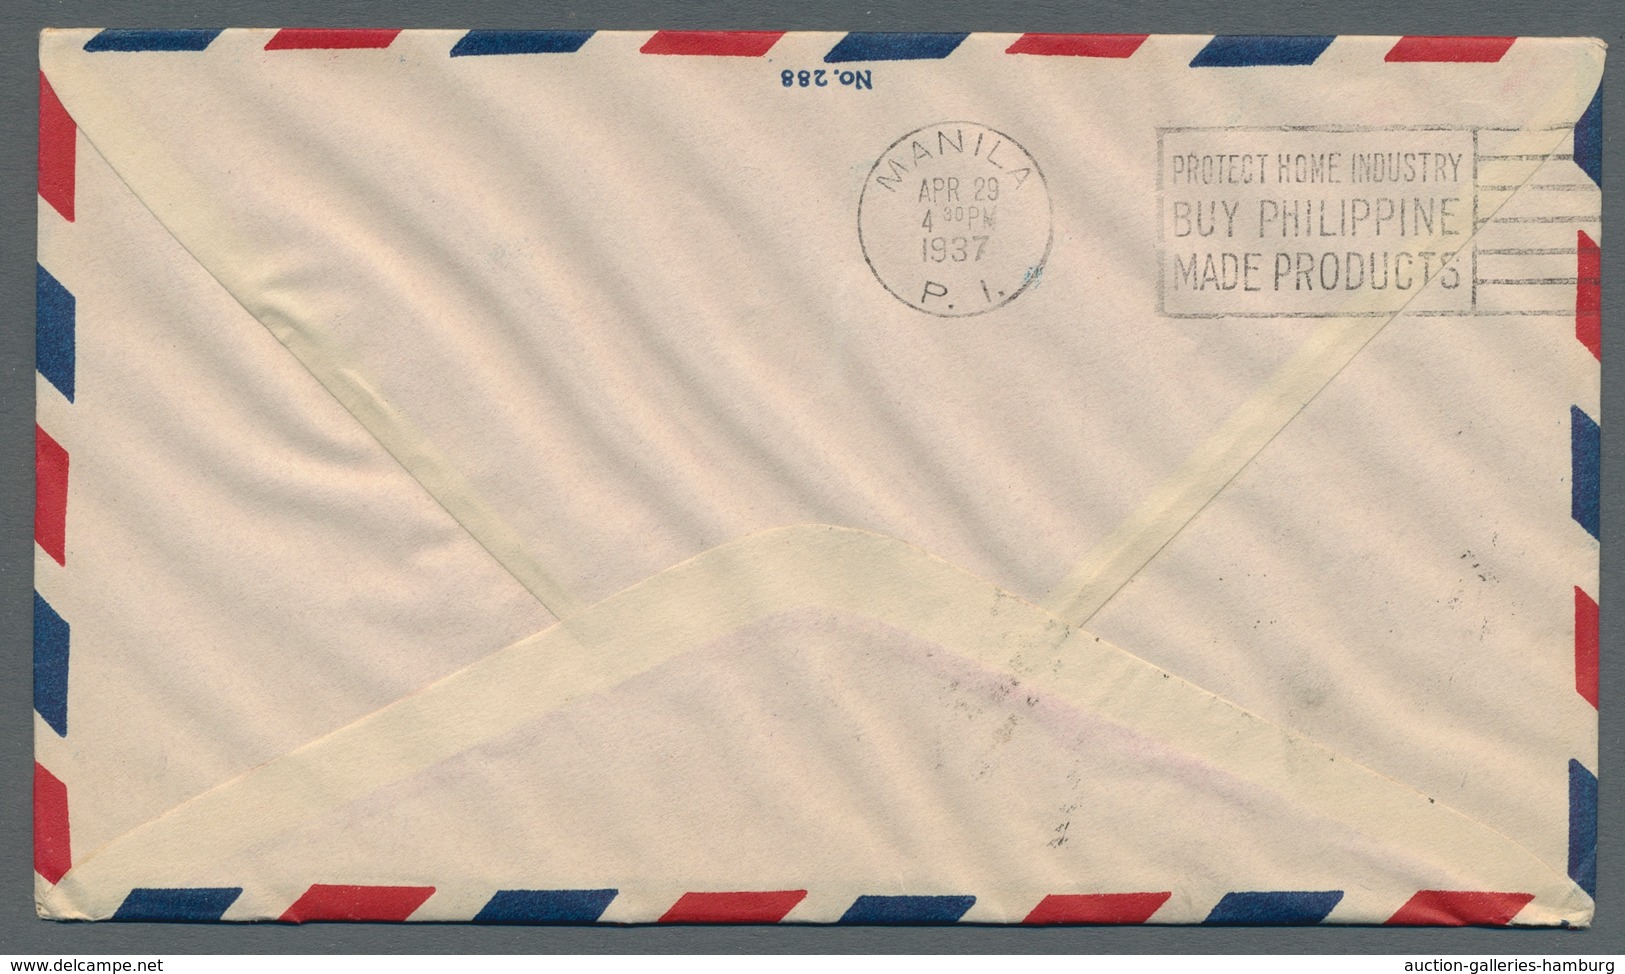 Macau: 1936, Flugpostausgabe auf fünf Briefen, teilweise mehrfach, mit Zusatzfrankaturen. Alle Beleg